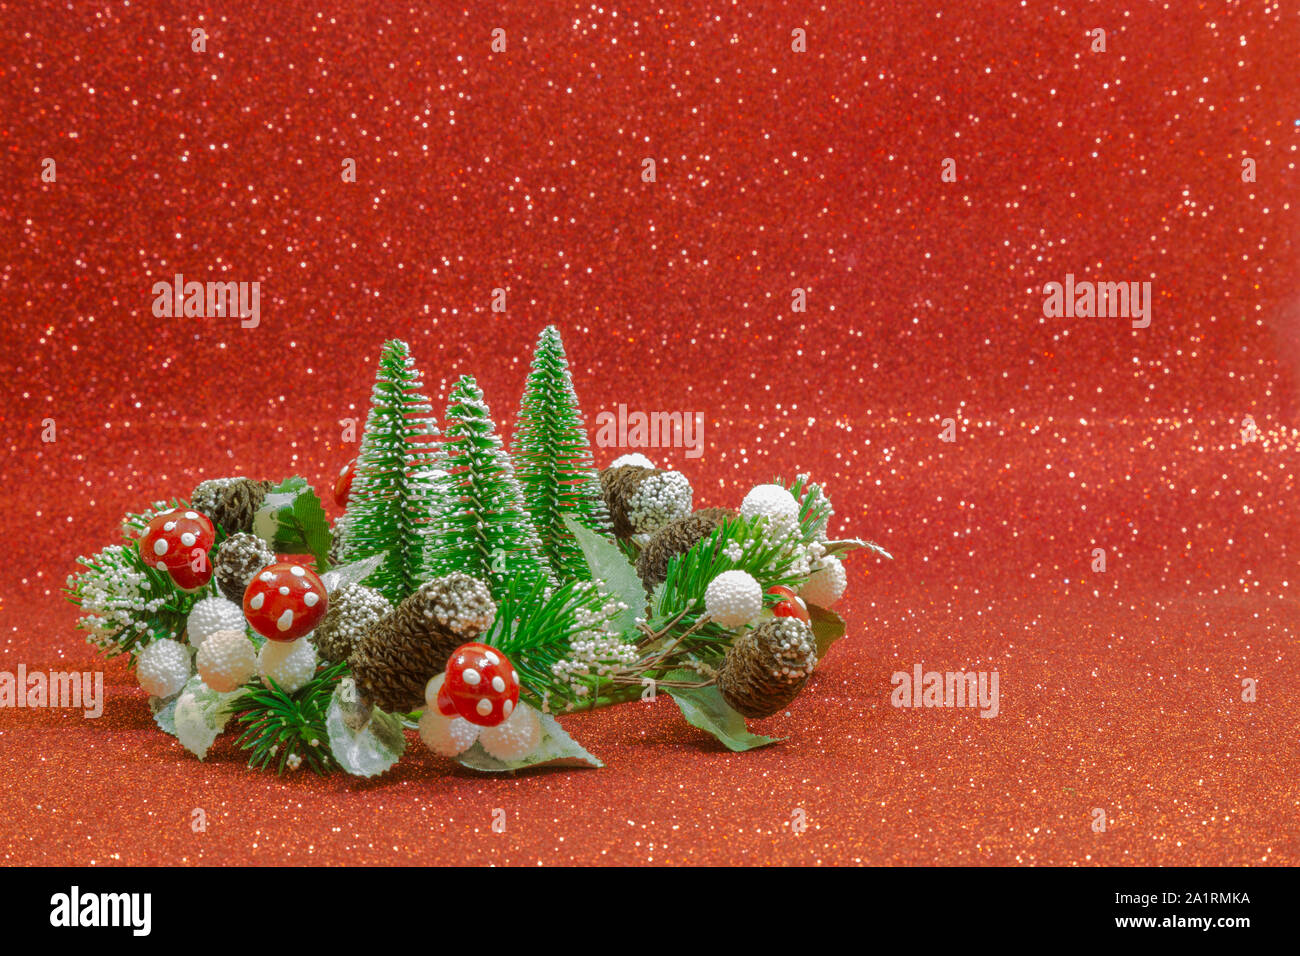 Trois arbres de Noël et une guirlande décorée avec des champignons rouges, boules blanches et de petites pommes de pin sur un fond rouge. Banque D'Images